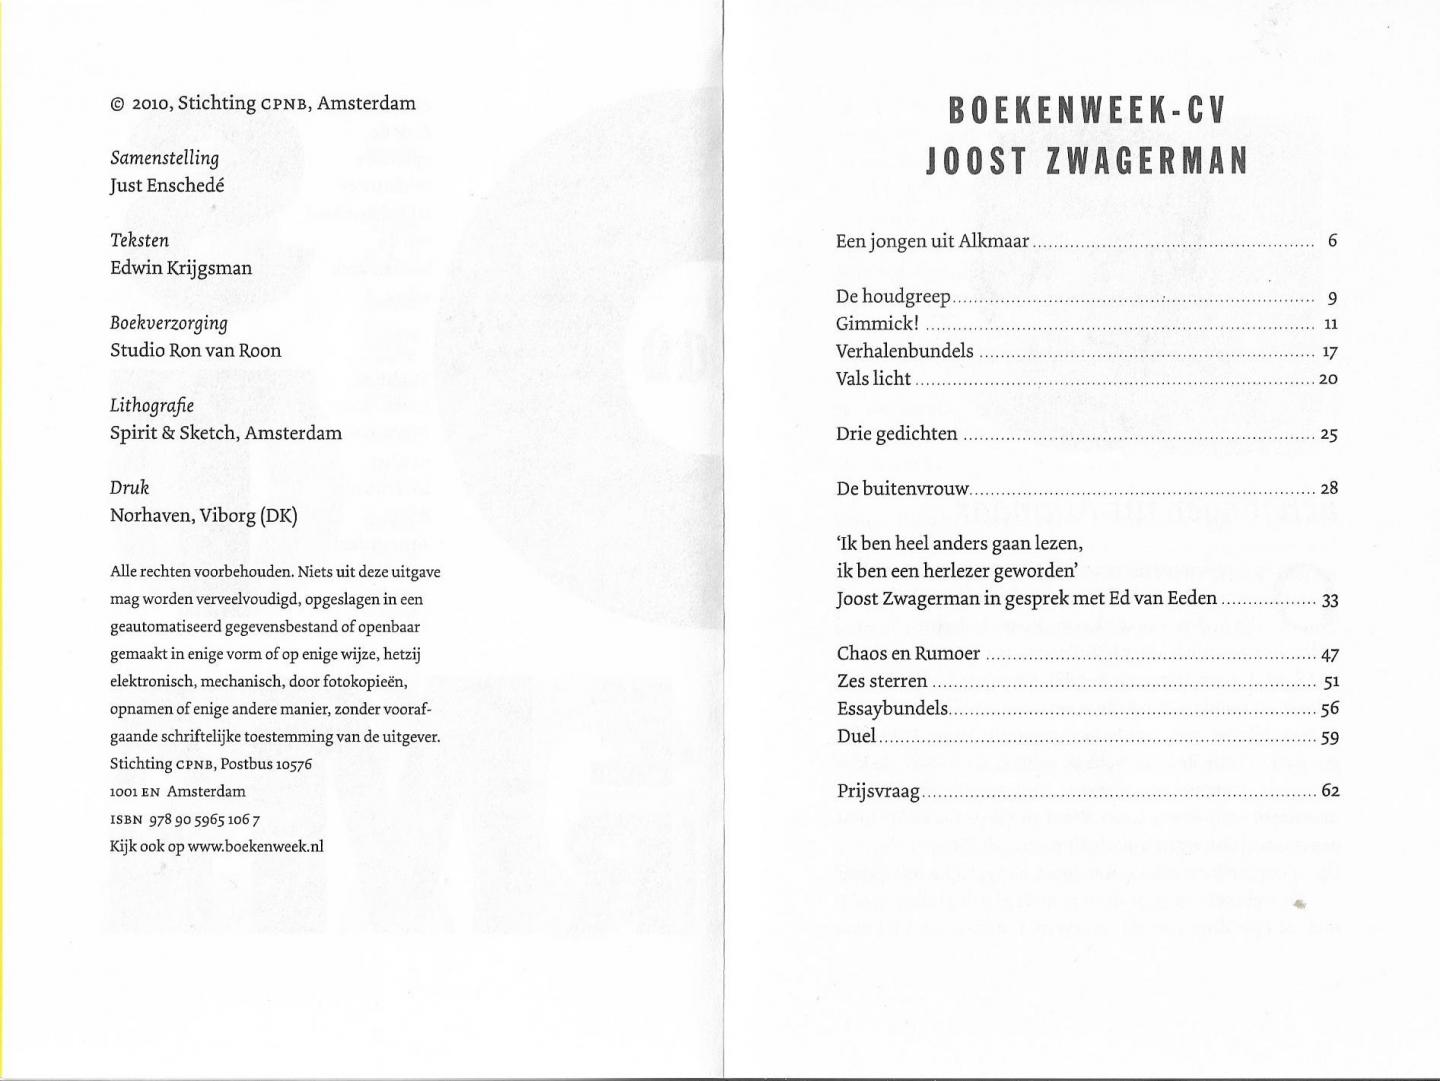  - Boekenweek CV 2010, cadeau van de bibliotheek, Joost Zwagerman.